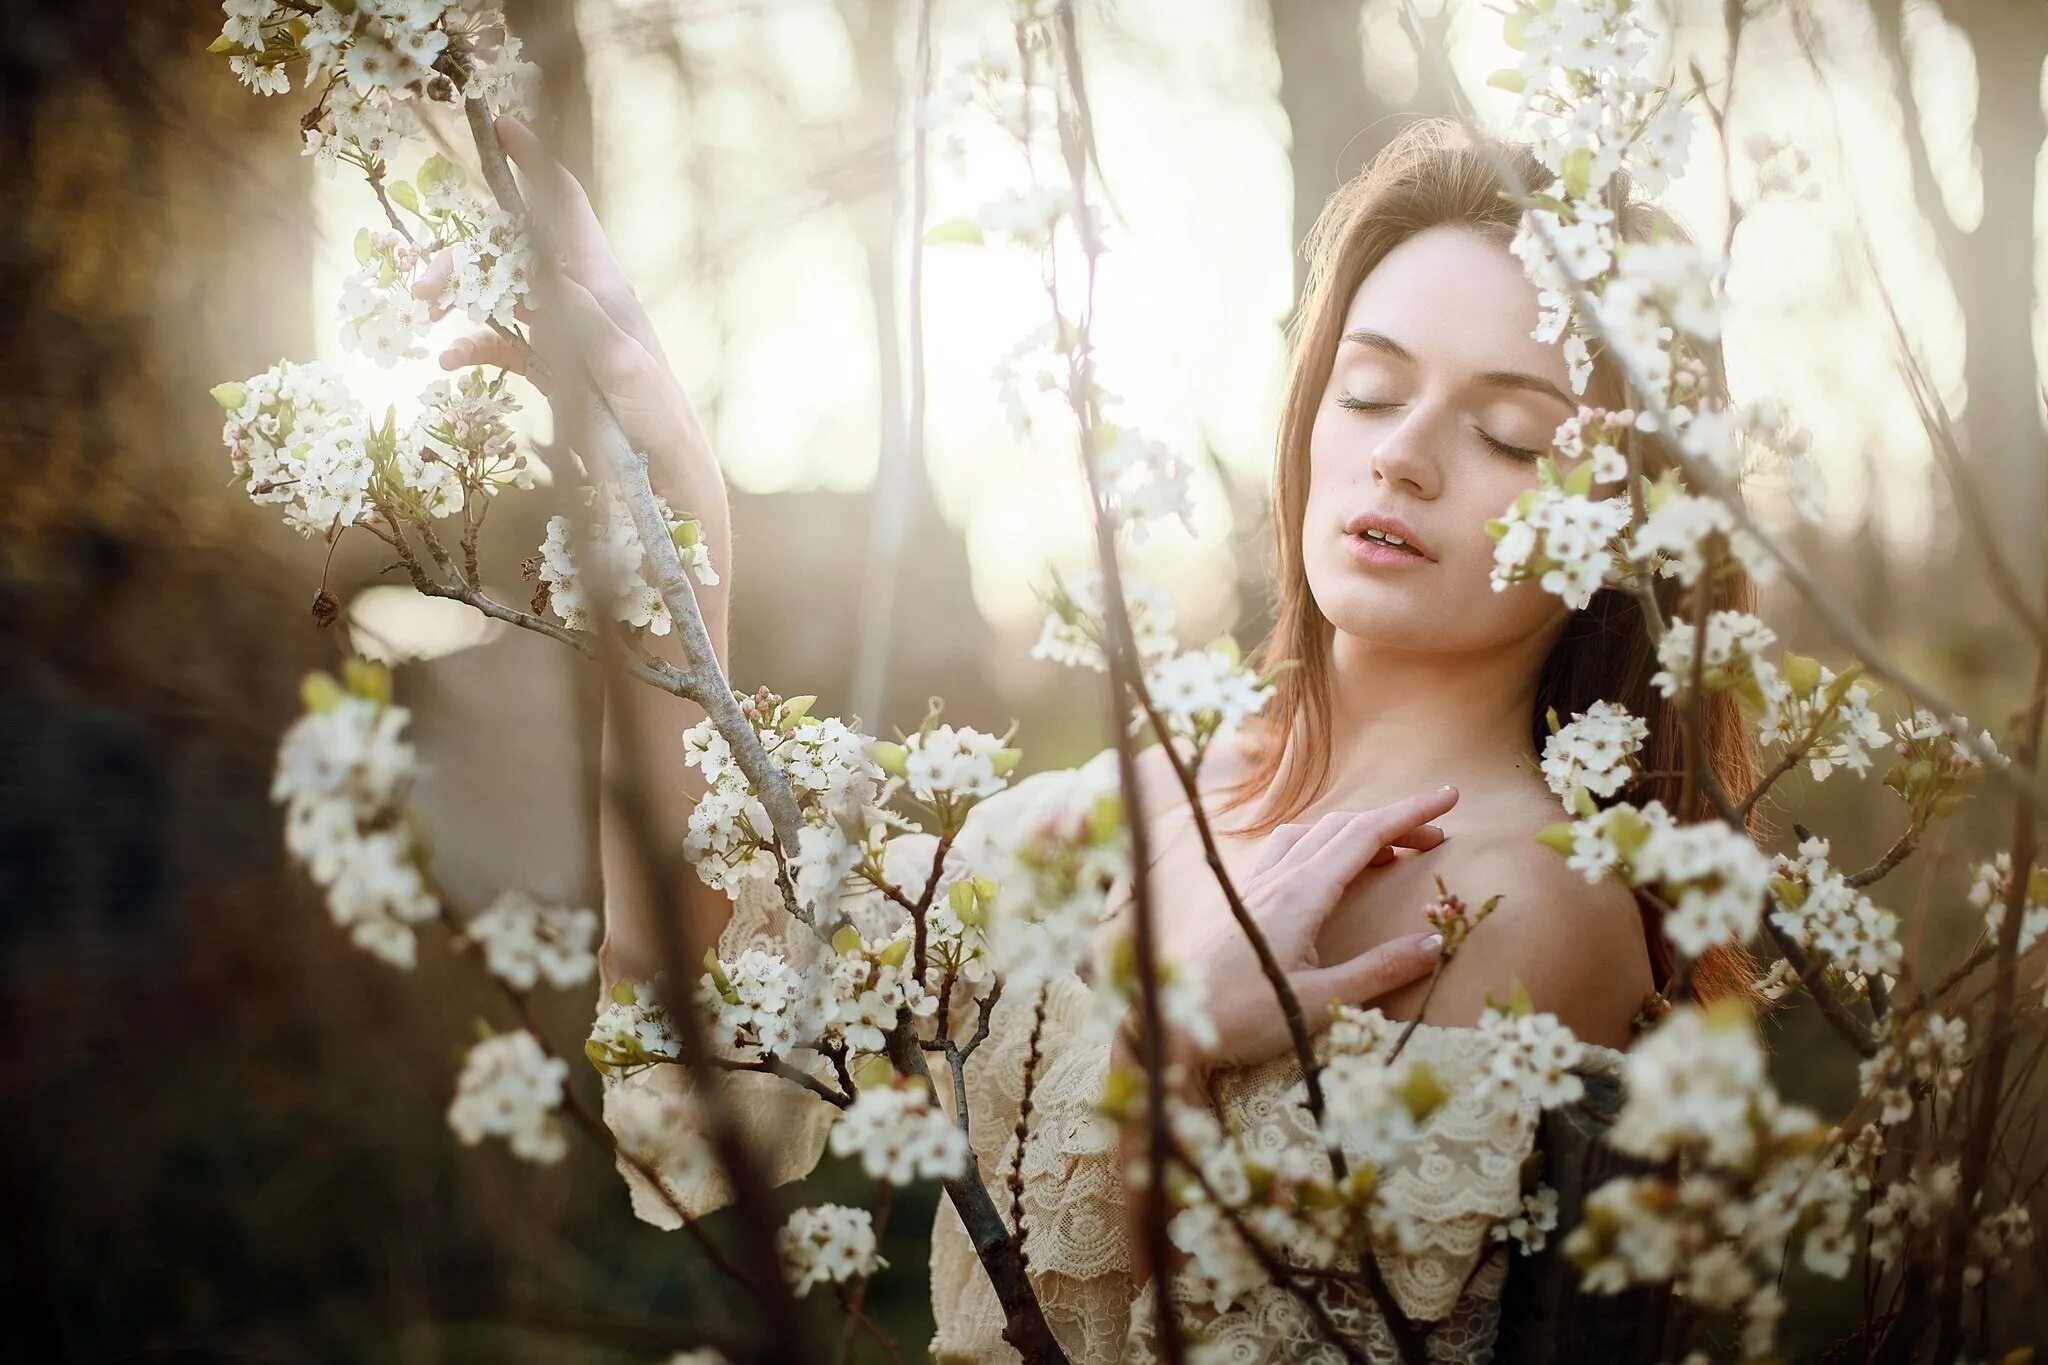 Февраль пробуждение чувств. Женщина в цветущем саду. Образ весны для фотосессии.